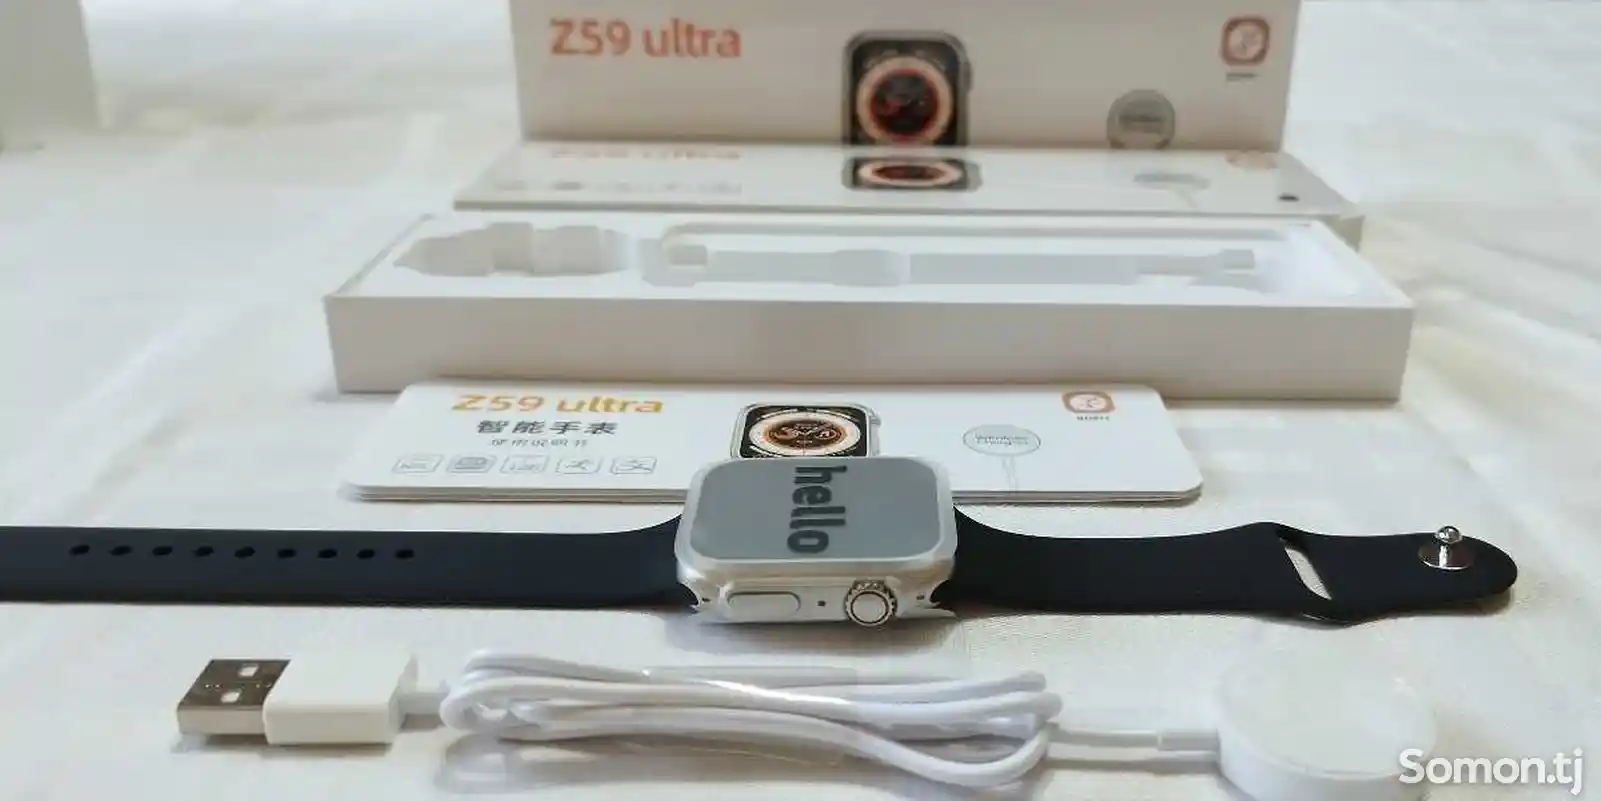 Смарт часы Smart Watch Z59 Ultra-3